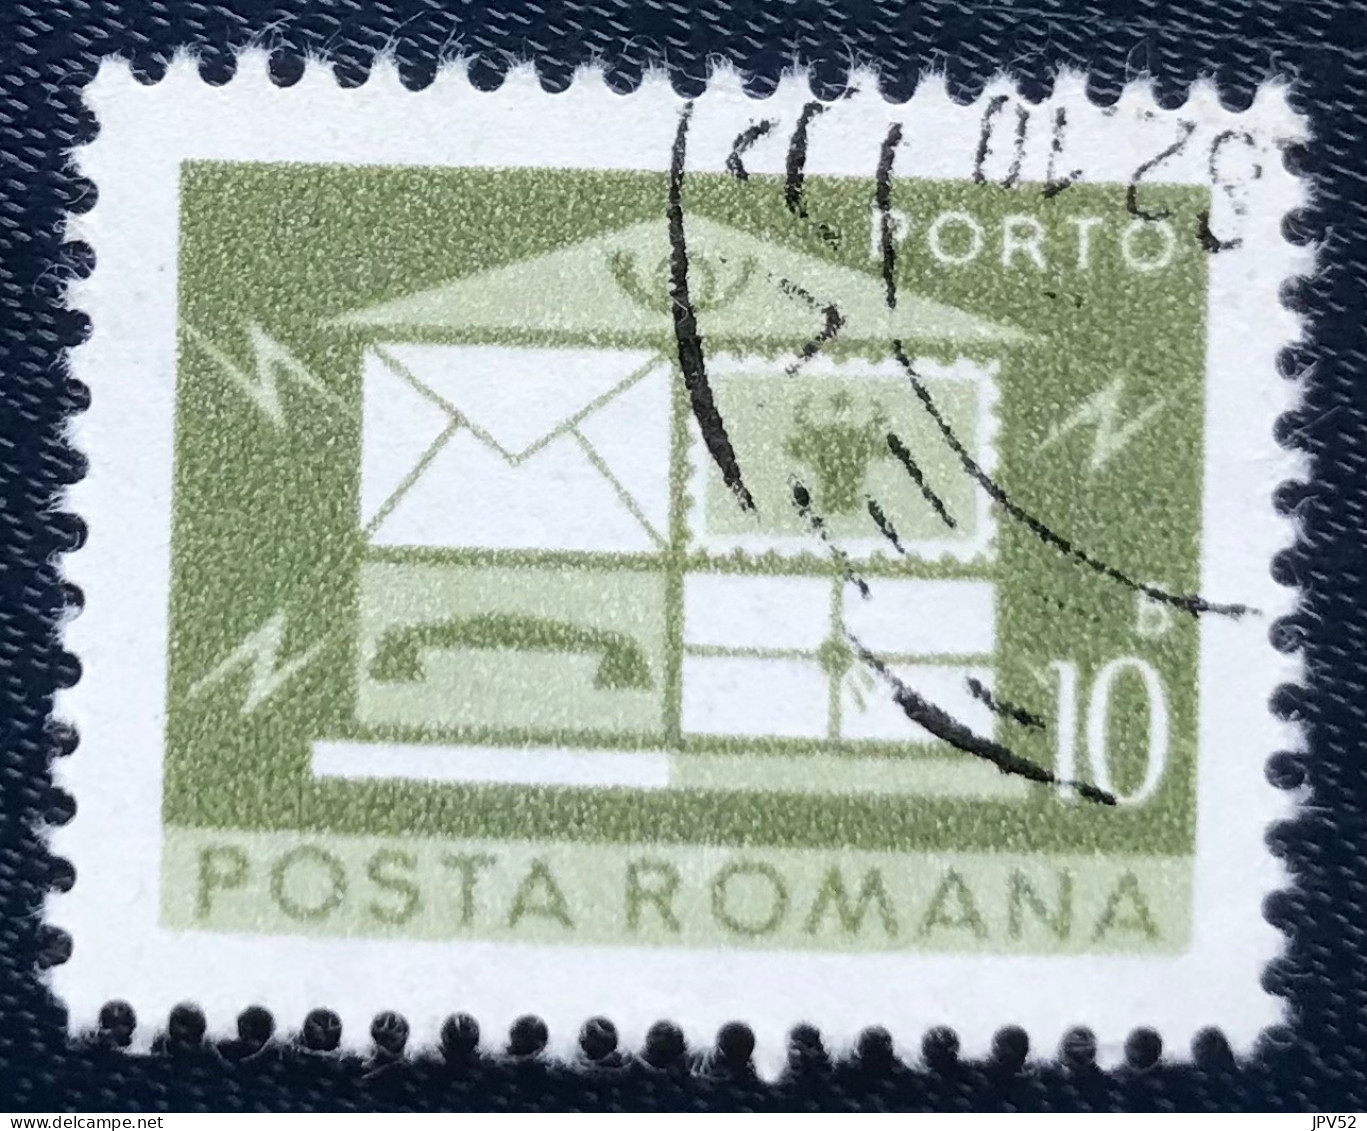 Romana - Roemenië - C14/54 - 1974 - (°)used - Michel 120 - Brievenbus - Postage Due